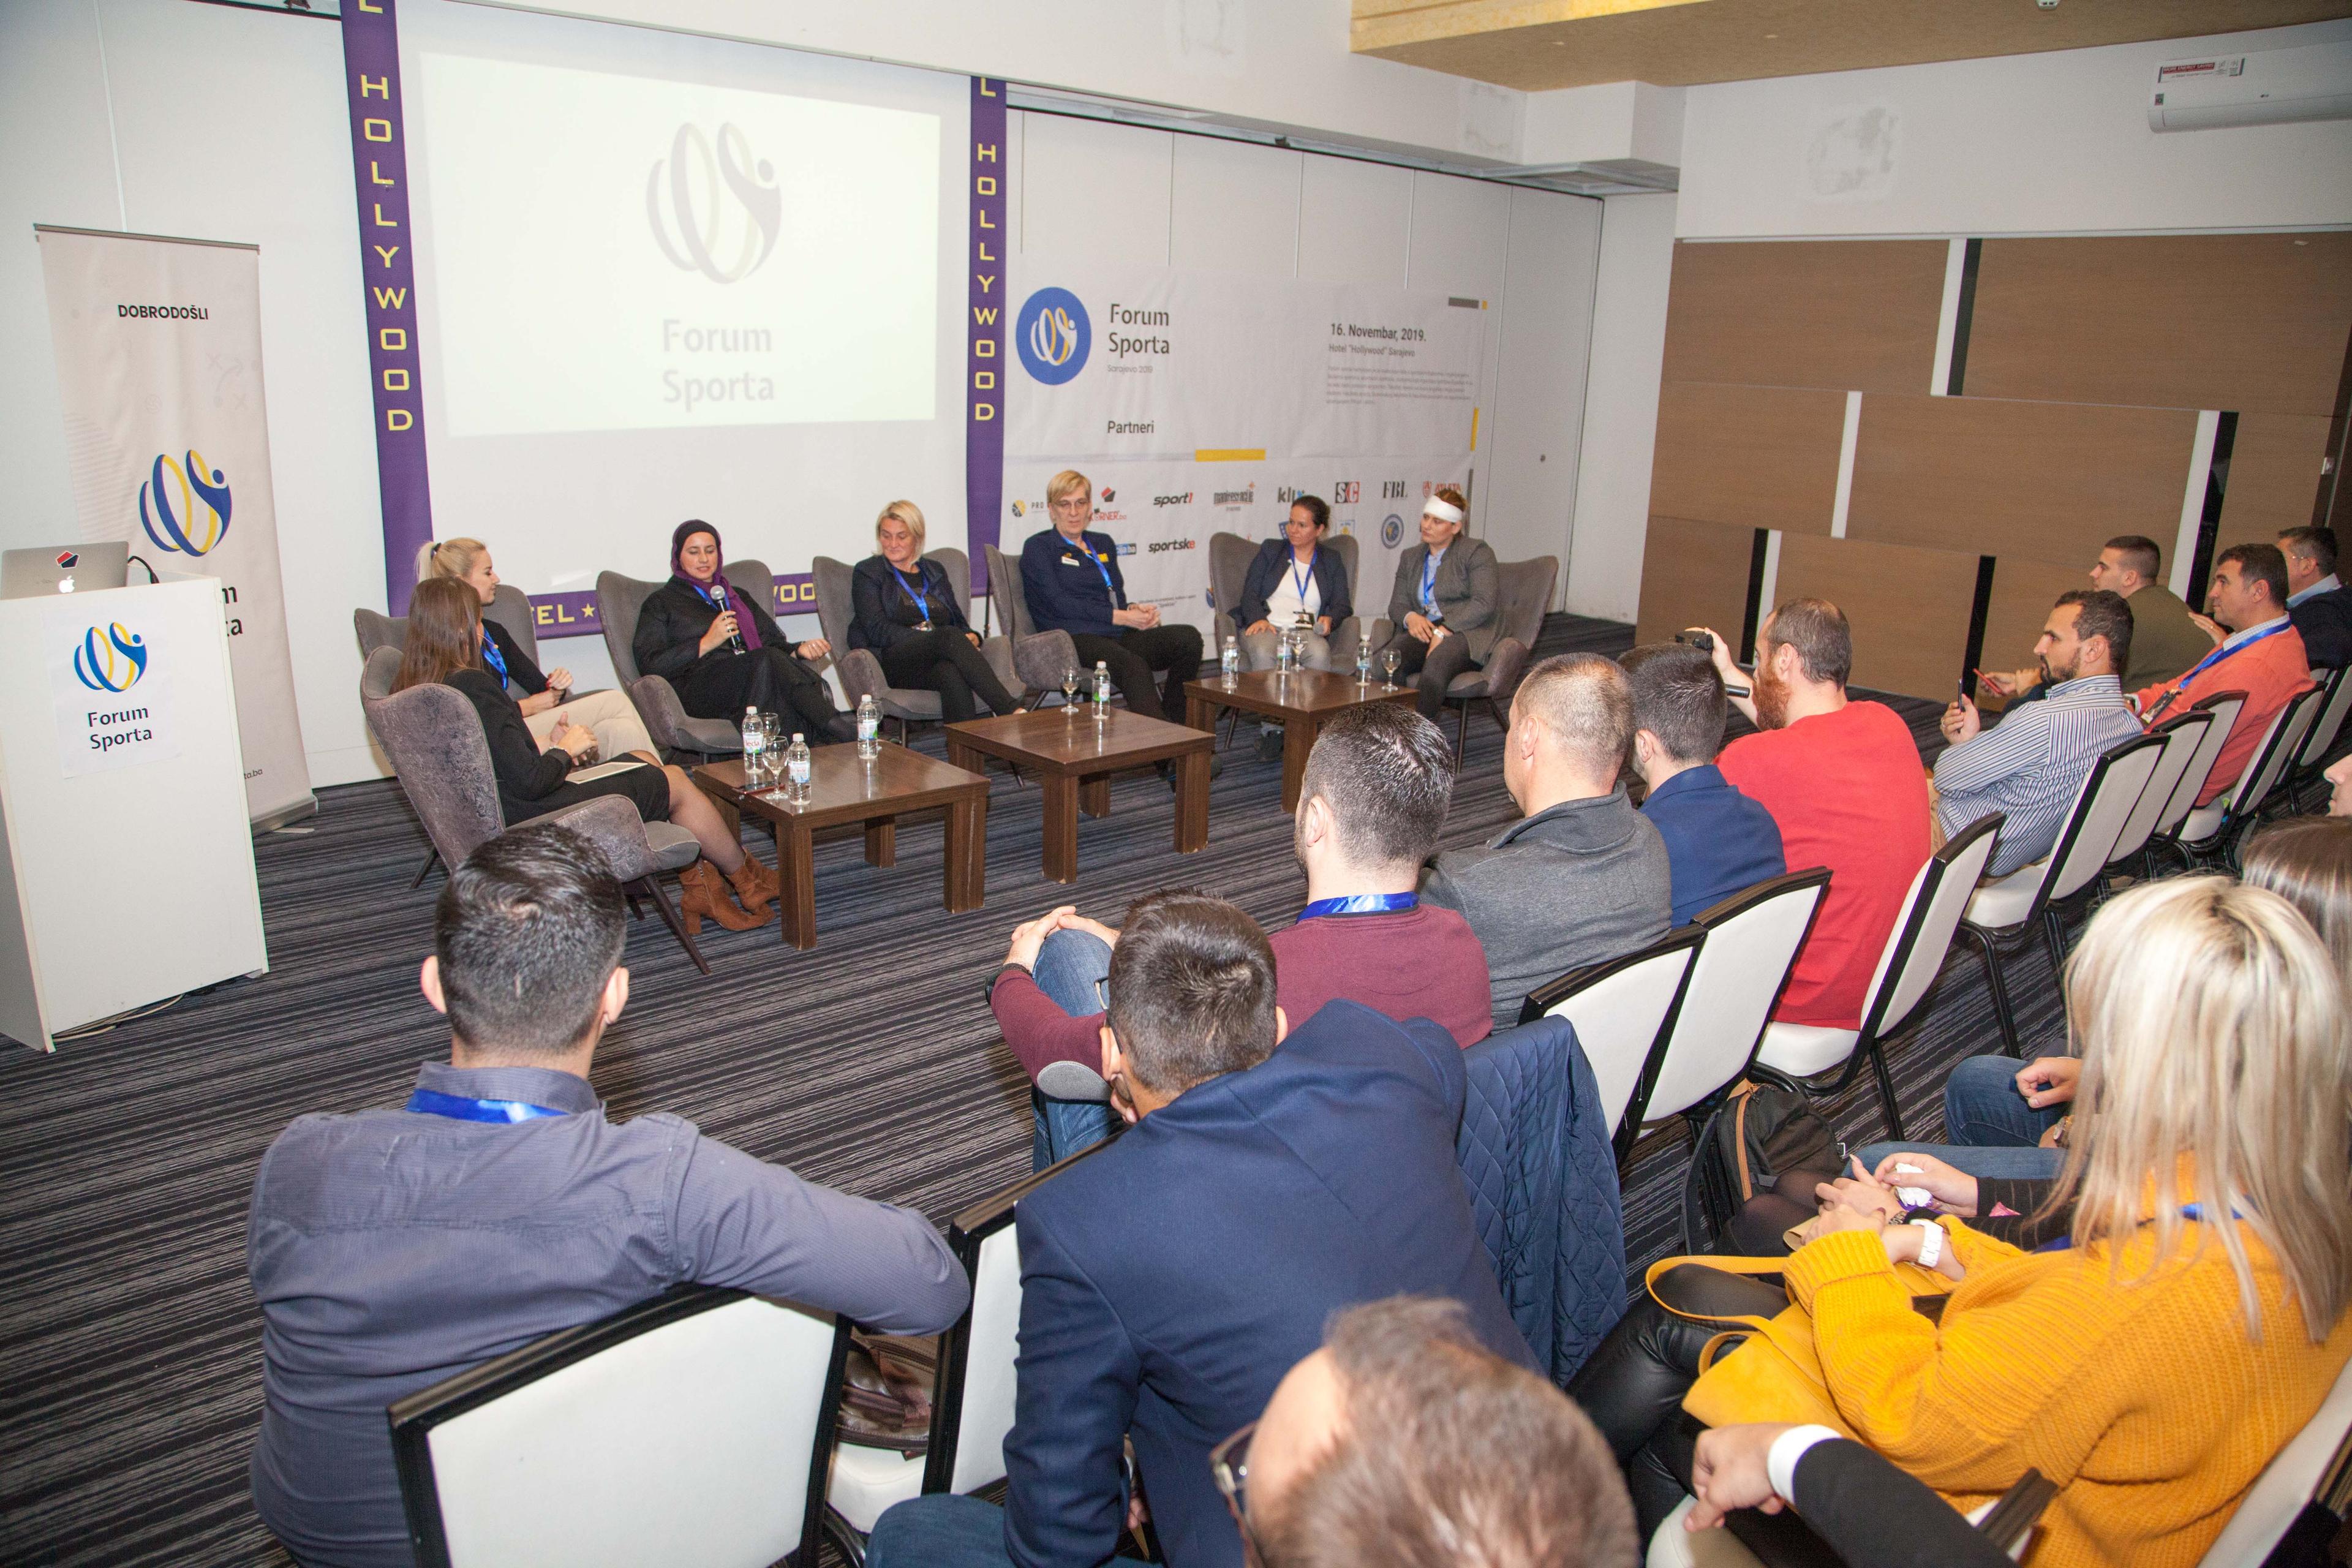 U Sarajevu uspješno održan drugi Forum sporta - Avaz